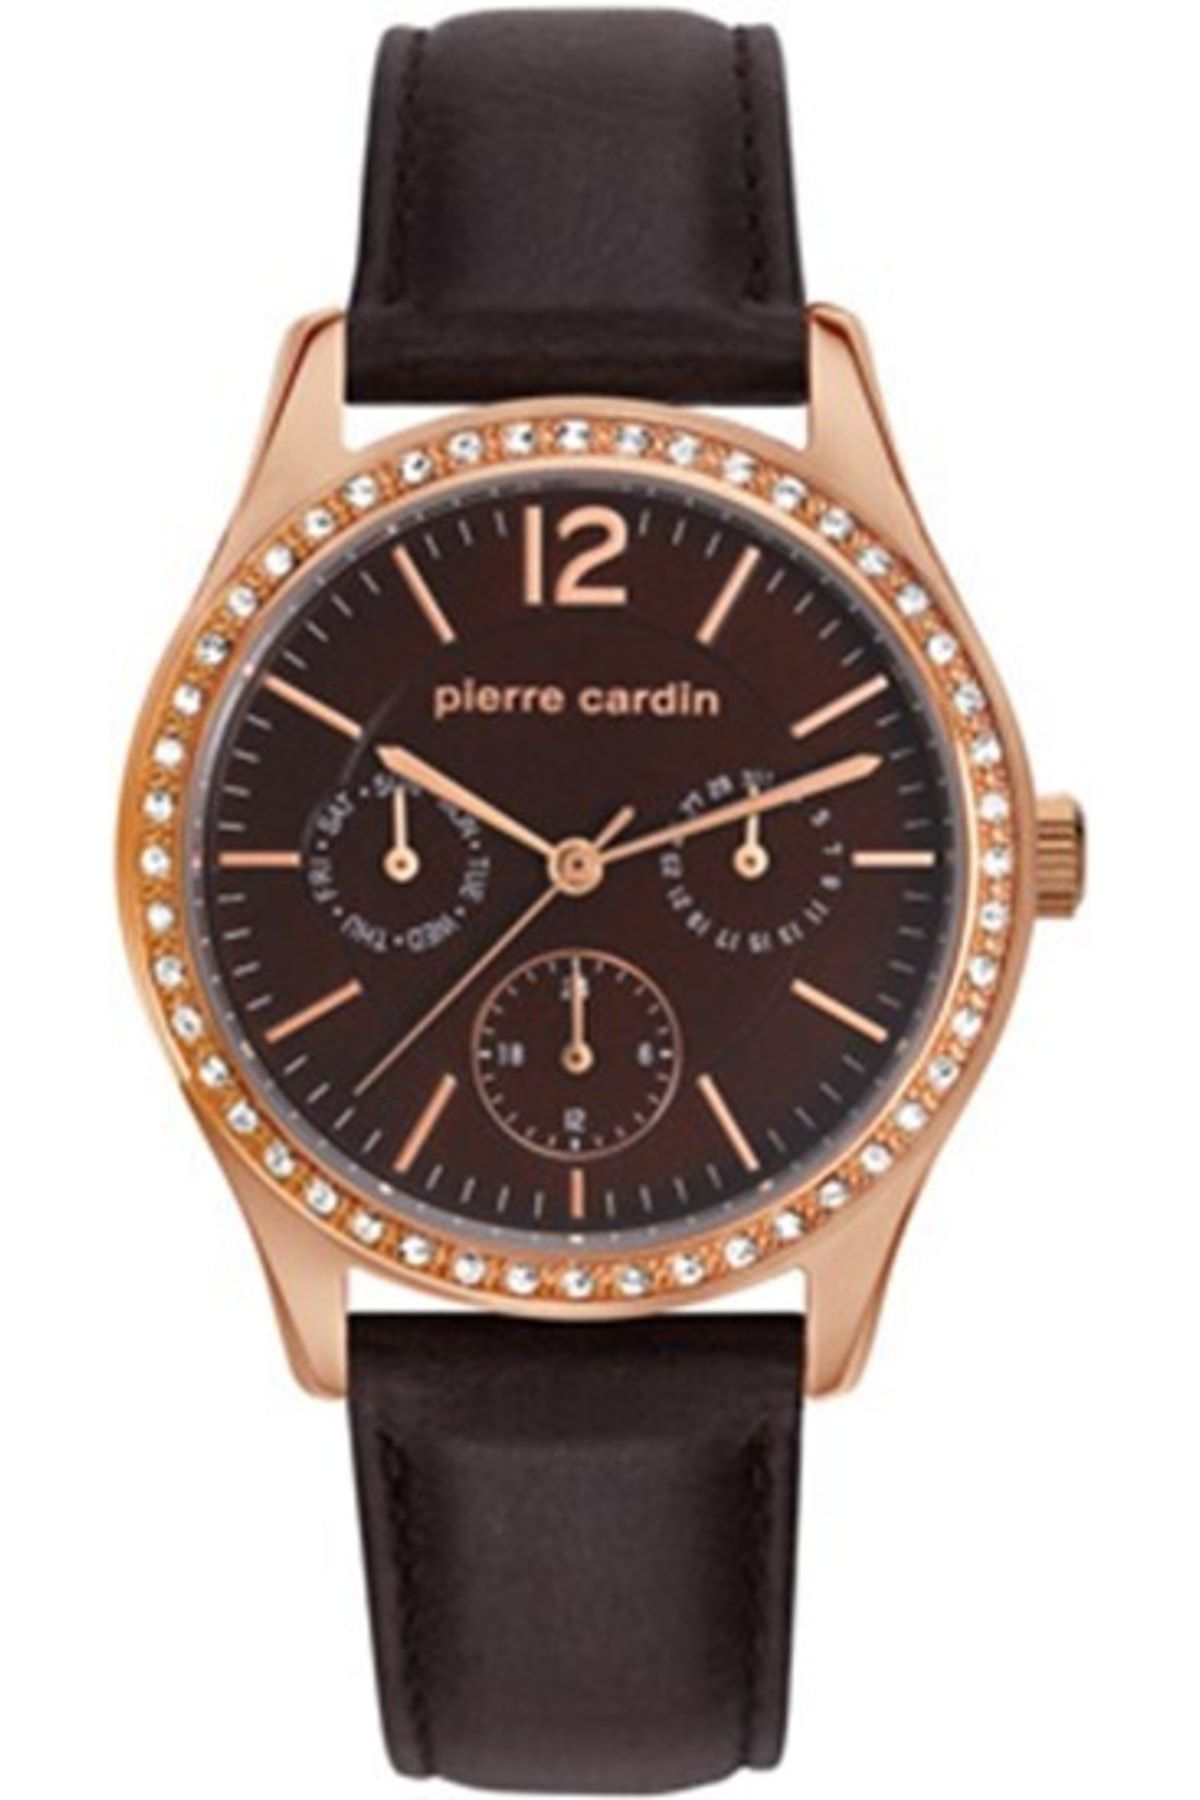 Pierre Cardin 106952f12 Kadın Kol Saati